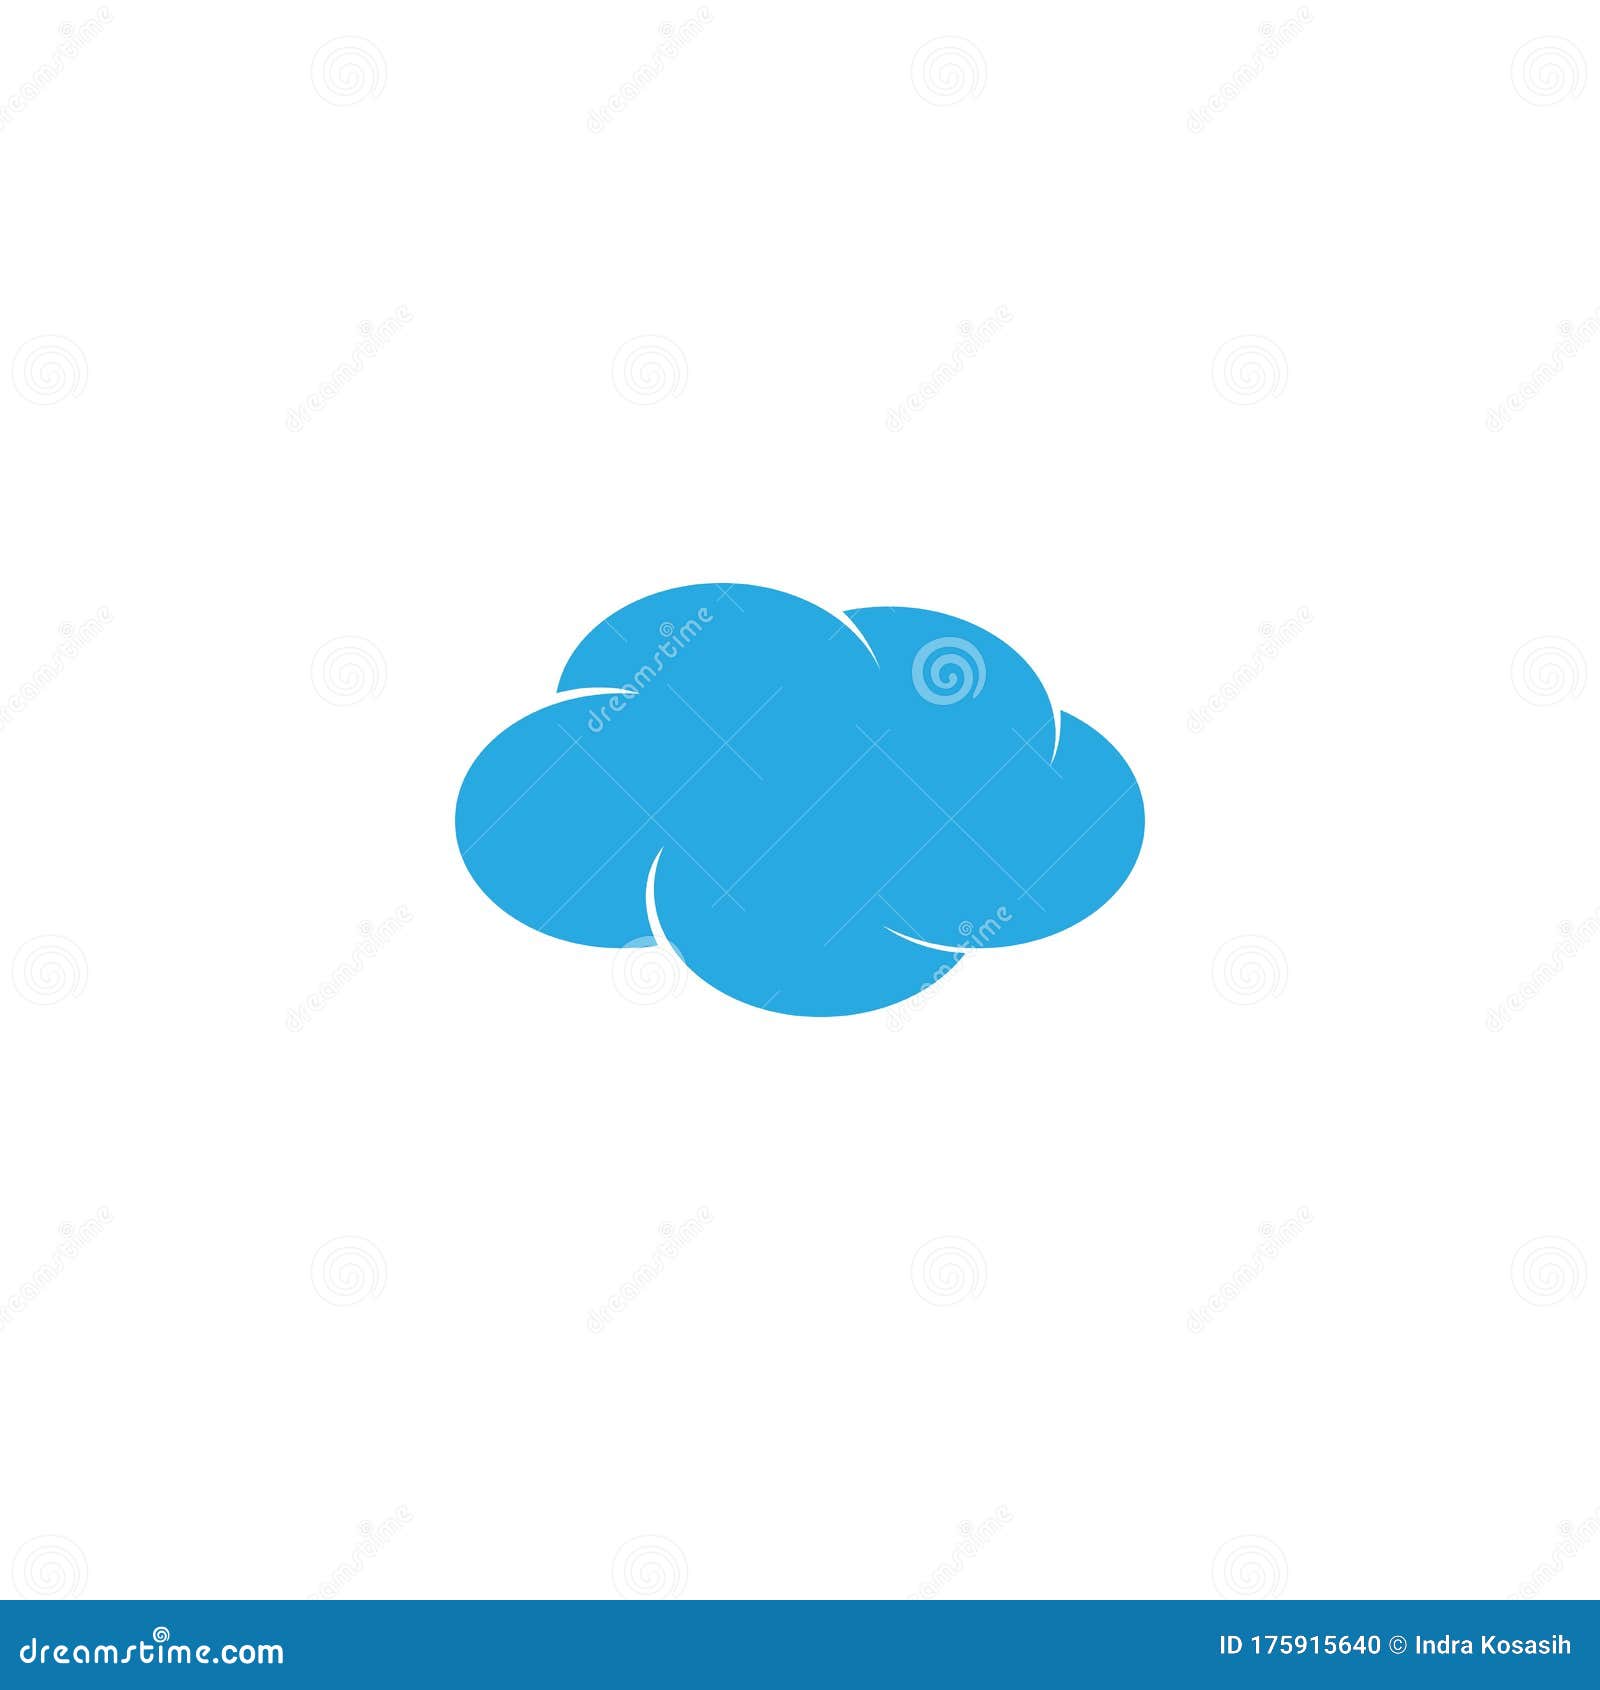 Dados Da Nuvem Da Ilustração Do Conceito De Computação Em Nuvem Da Internet  PNG , Nuvens, Azul, Desenho Animado Imagem PNG e Vetor Para Download  Gratuito